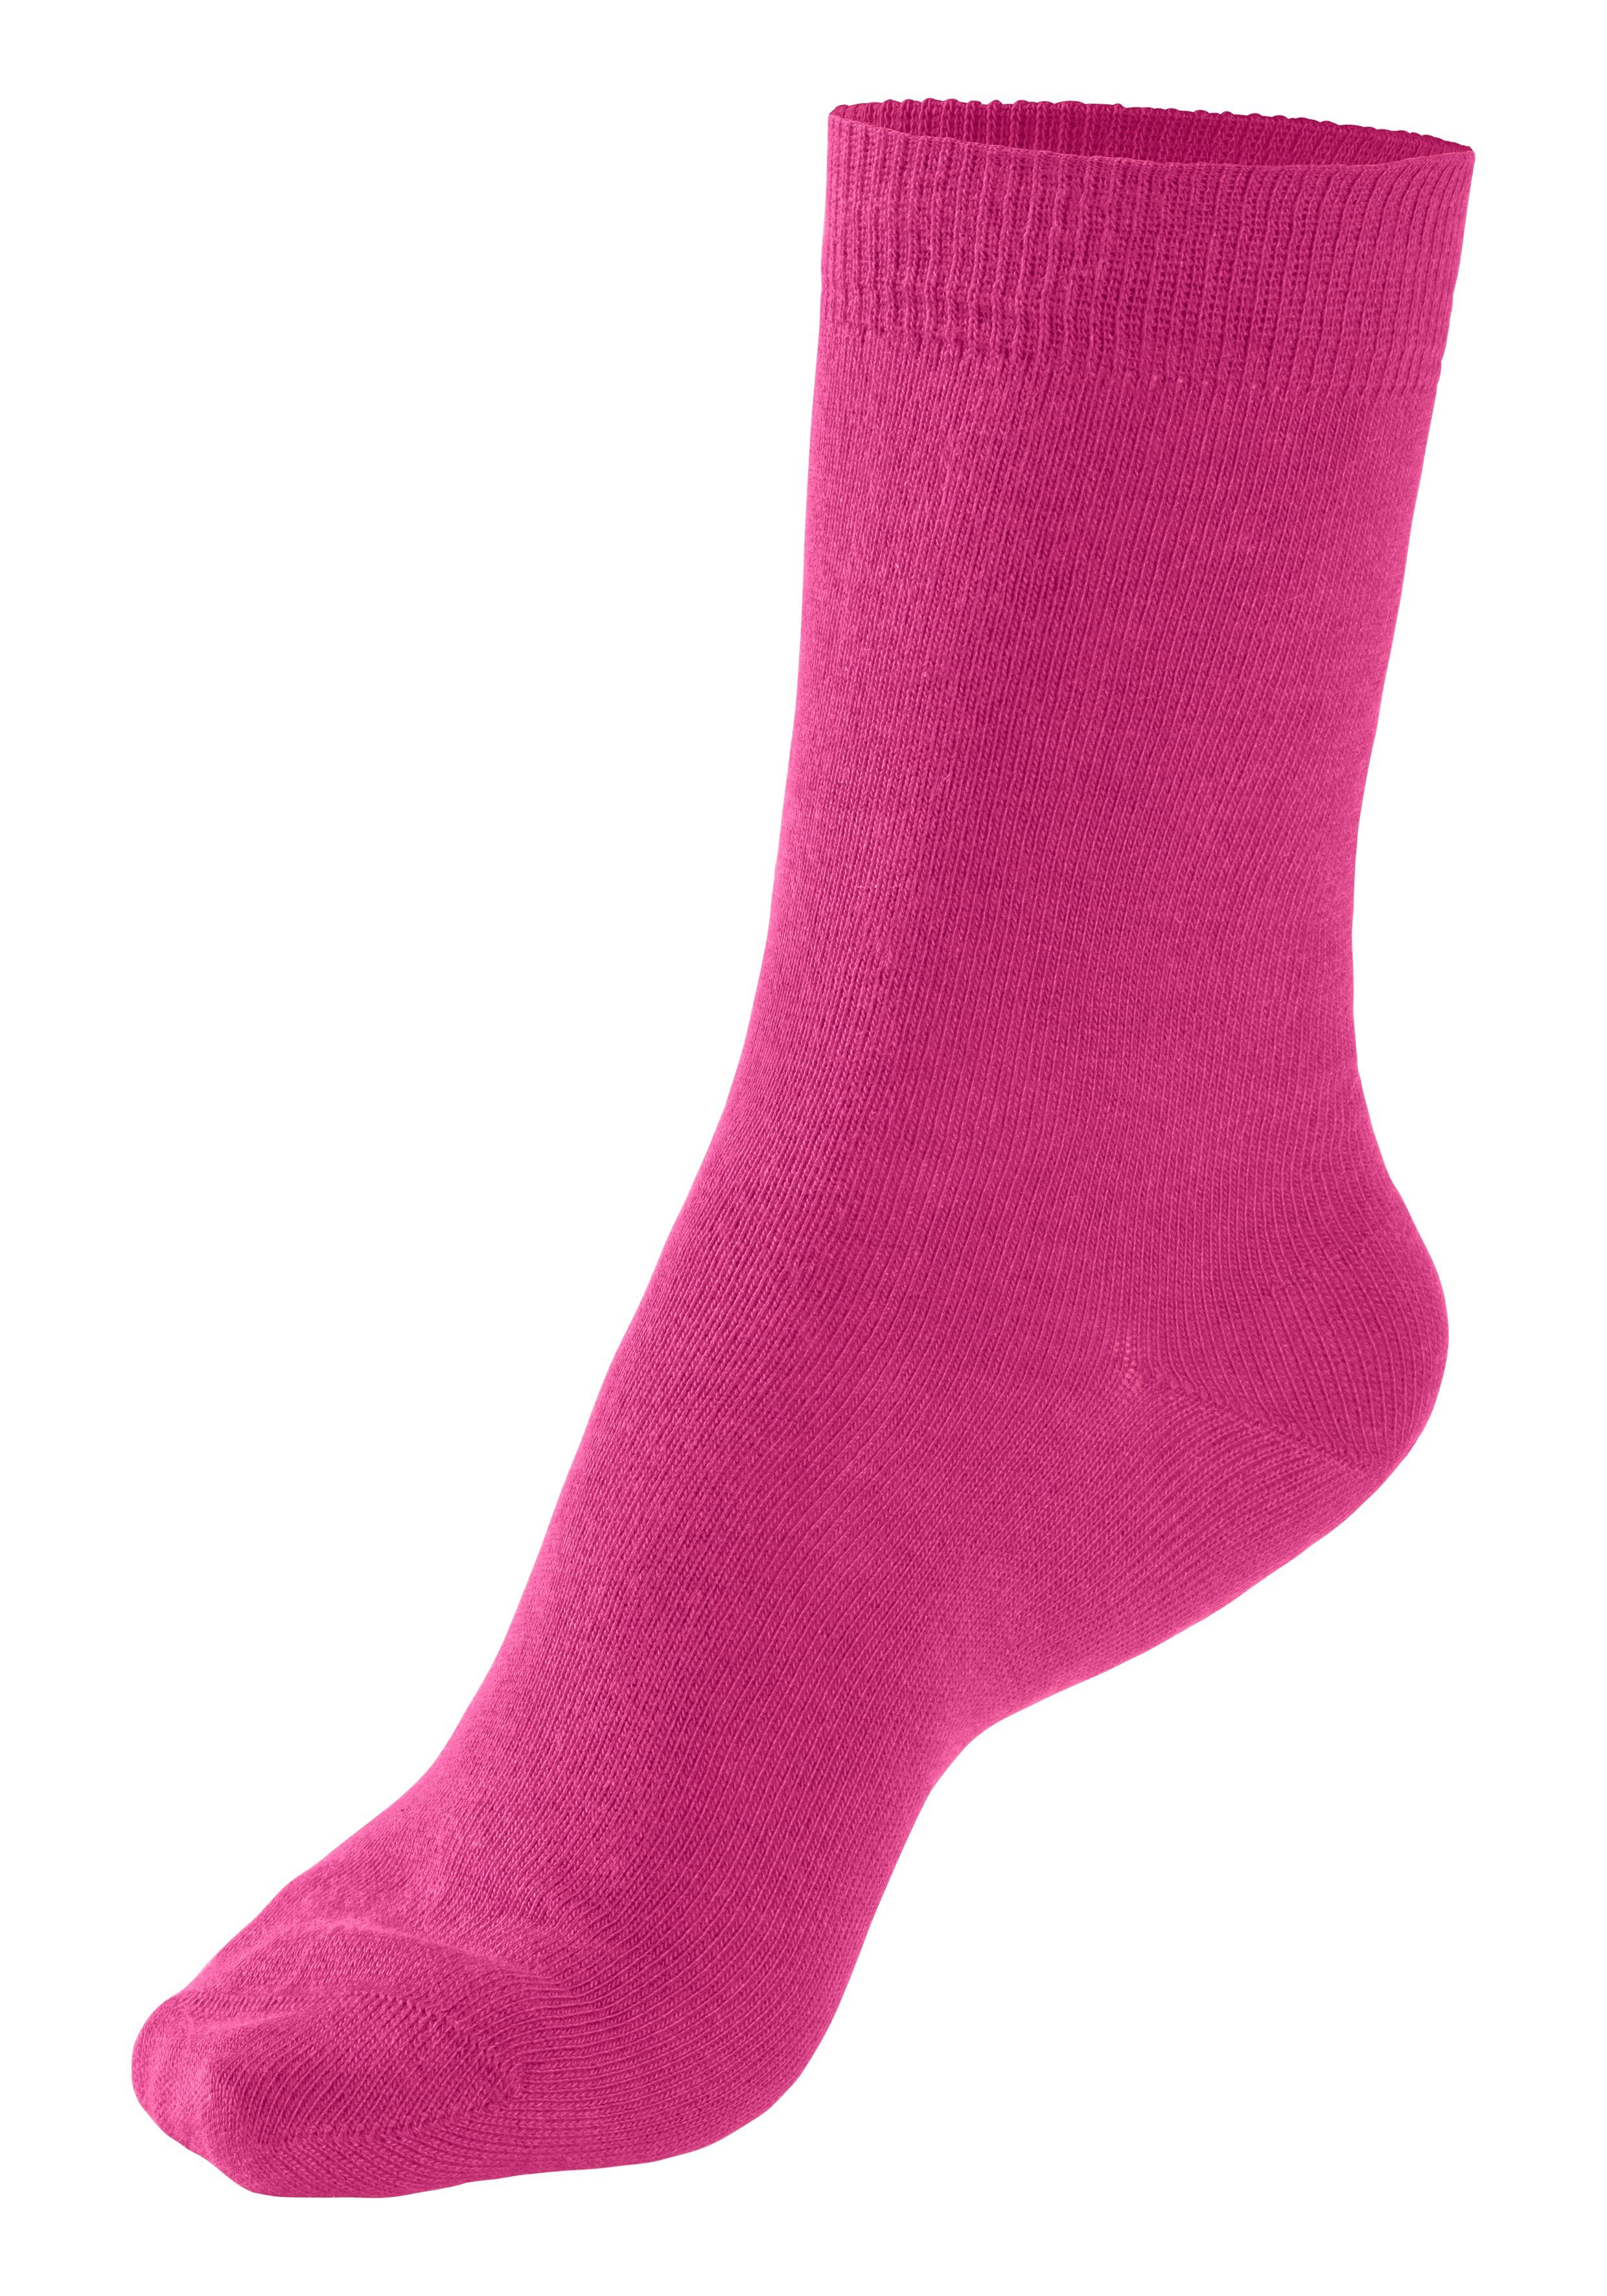 1x 4-Paar) unterschiedlichen bordeaux 1x 1x Socken (Set, blau, 1x pink, Farbzusammenstellungen in flieder, H.I.S